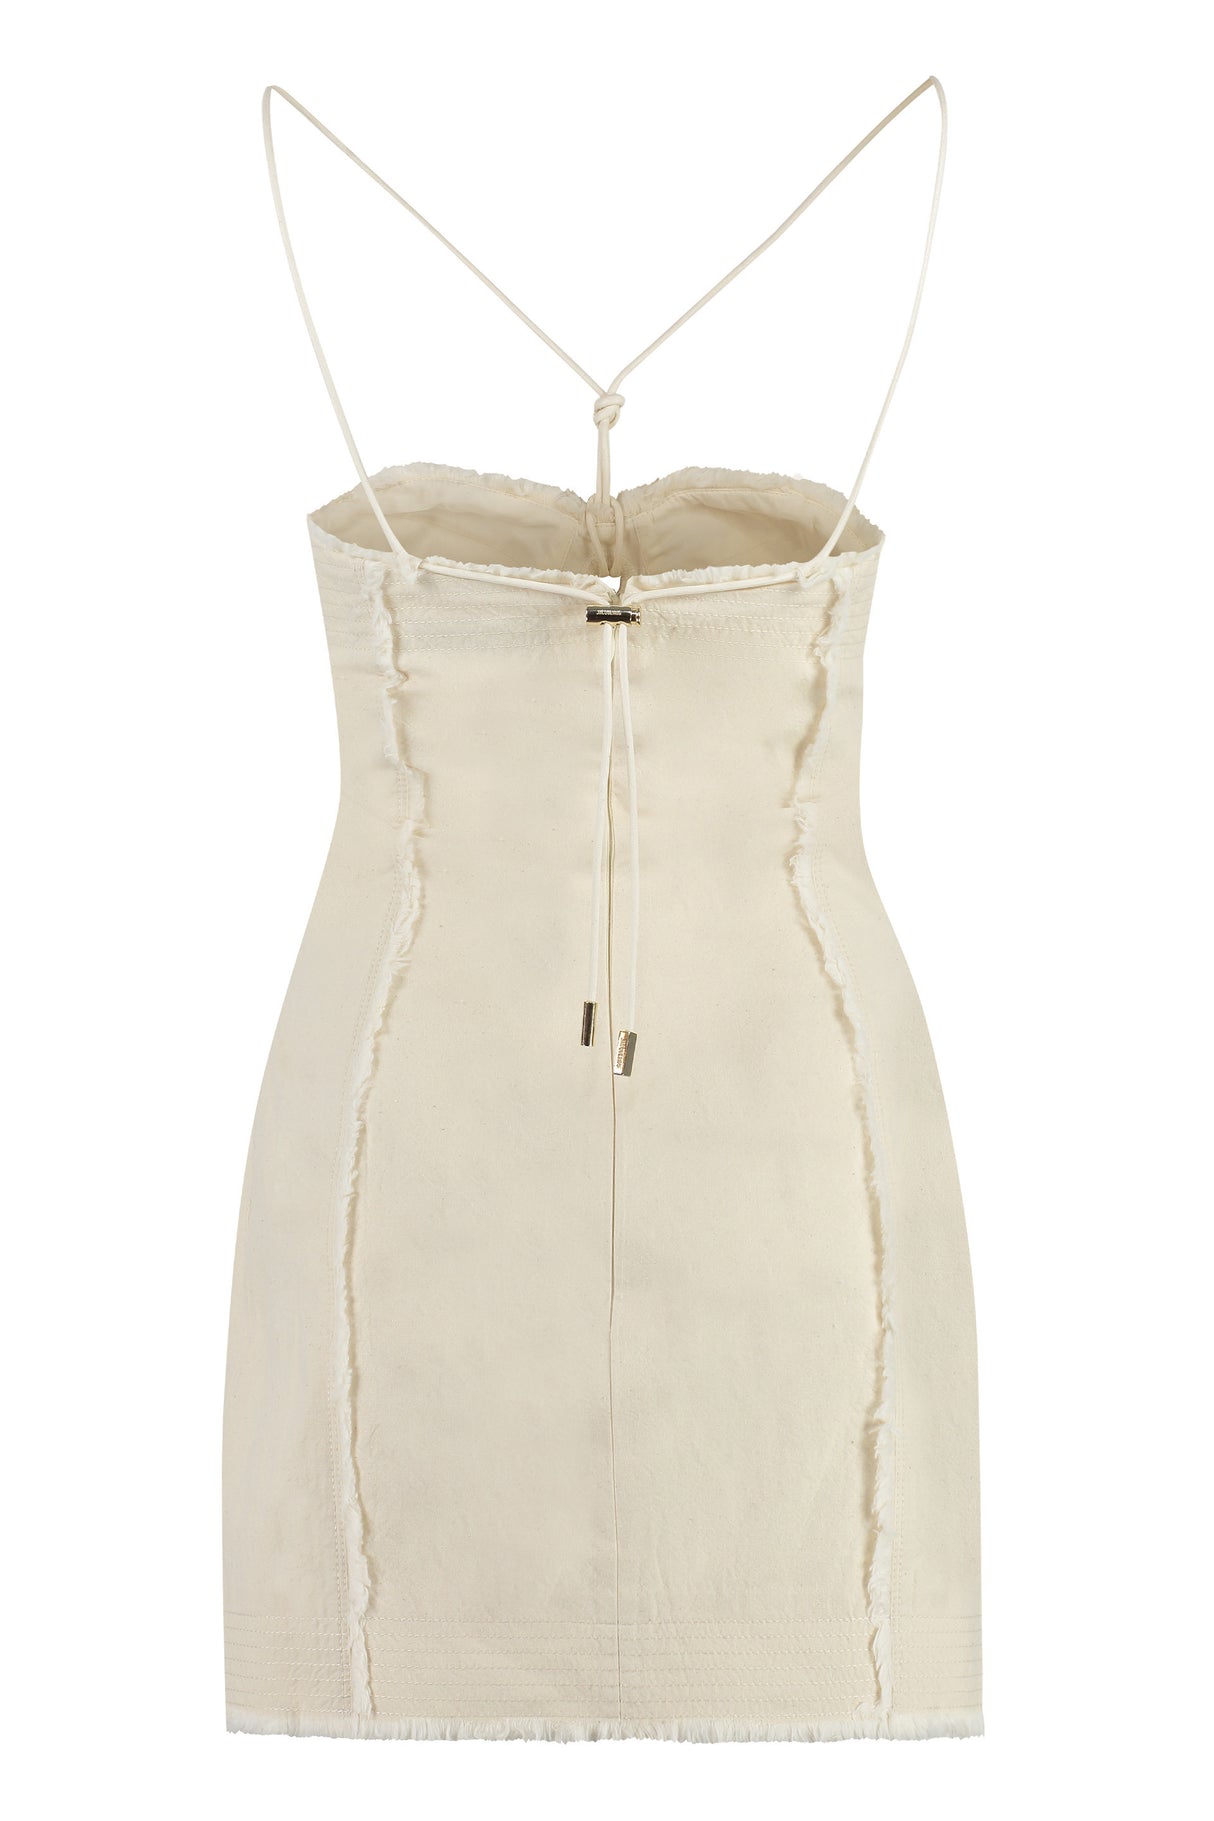 白色100%棉質連身裙女裝-可調節肩帶及帶褶皺的甜美聖心領